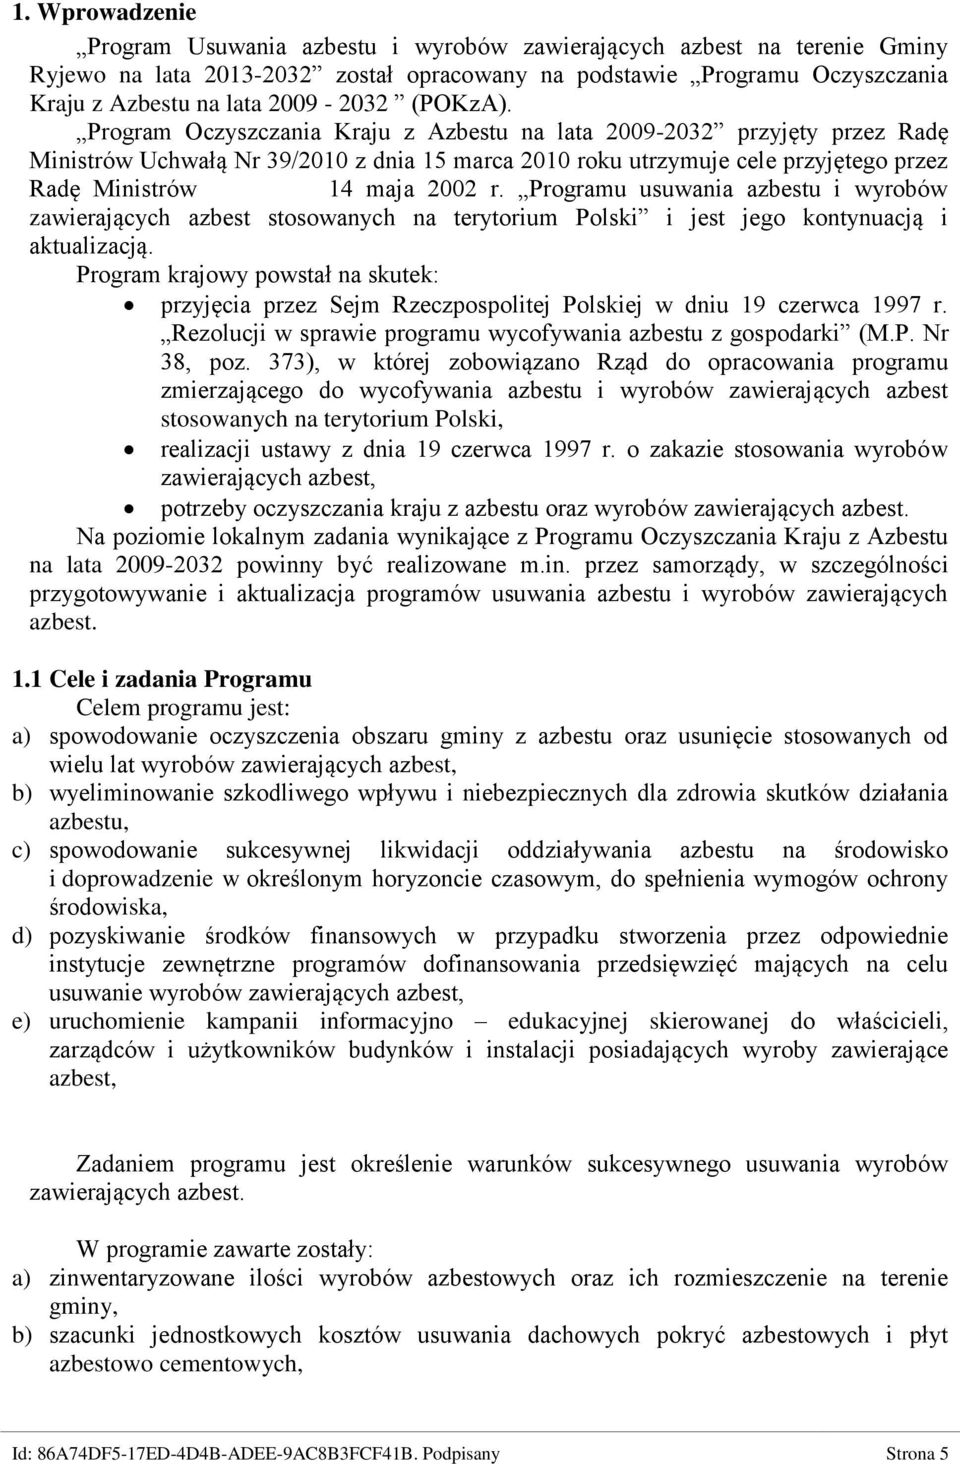 Program Oczyszczania Kraju z Azbestu na lata 2009-2032 przyjęty przez Radę Ministrów Uchwałą Nr 39/2010 z dnia 15 marca 2010 roku utrzymuje cele przyjętego przez Radę Ministrów 14 maja 2002 r.